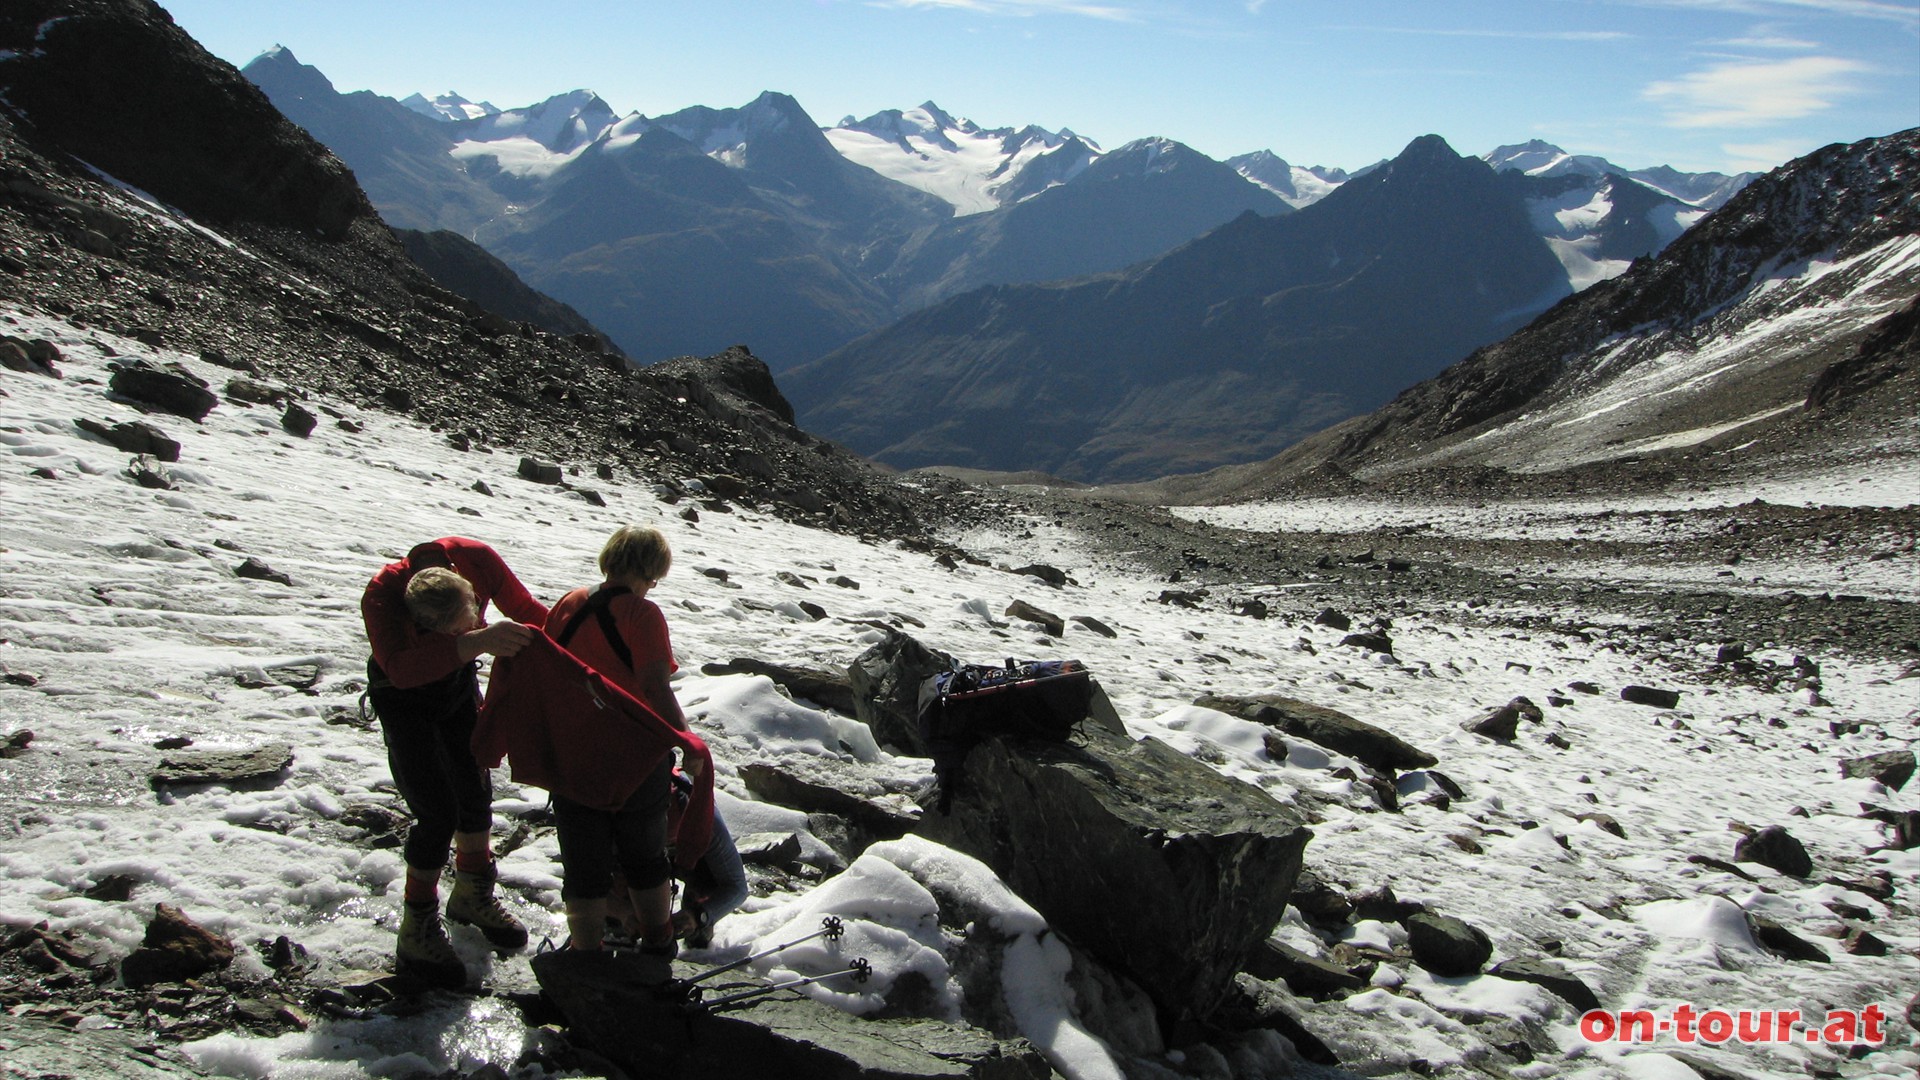 Bei ca. 3225m kommt die Gletscherausrüstung zum Einsatz; Sicherungsgurte, Steigeisen und Helm.